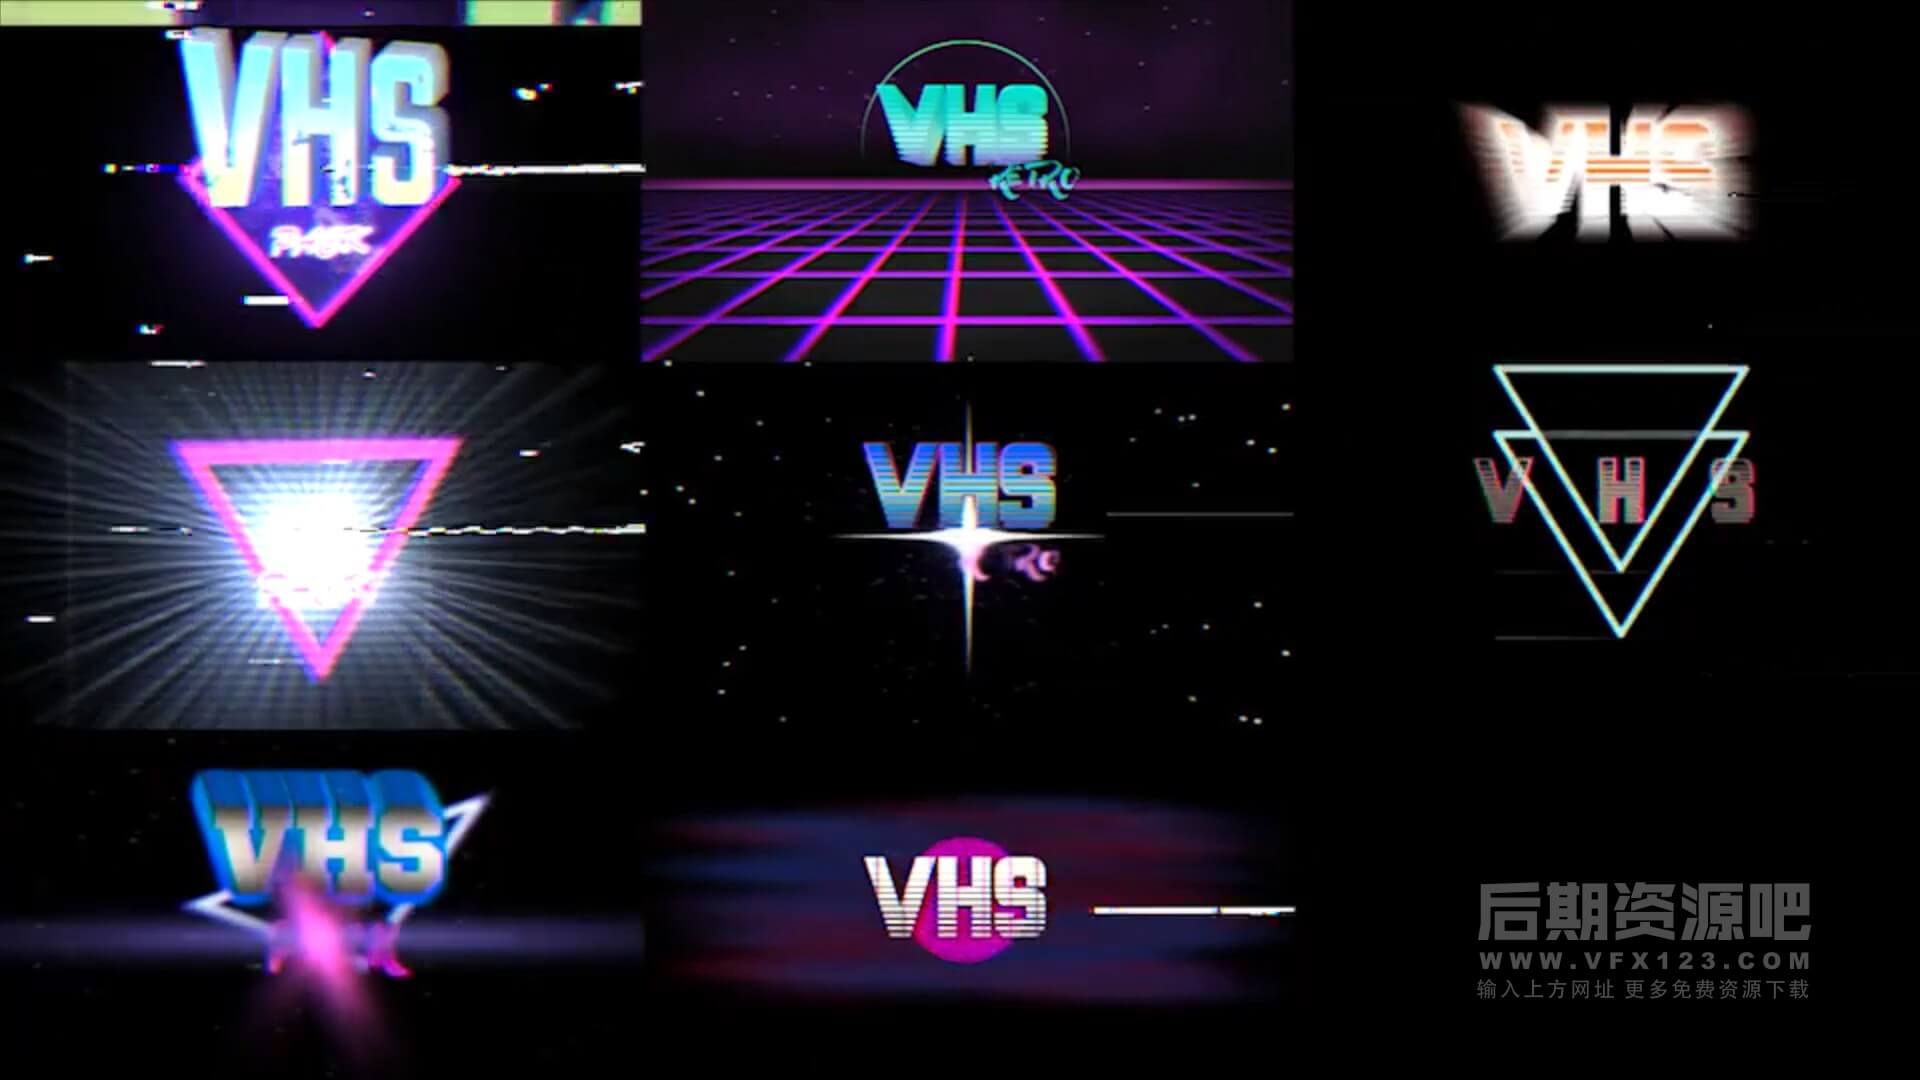 Fcpx标题插件 复古风格旧电影色彩分离特效预设 VHS Pack | MAC影视后期资源站